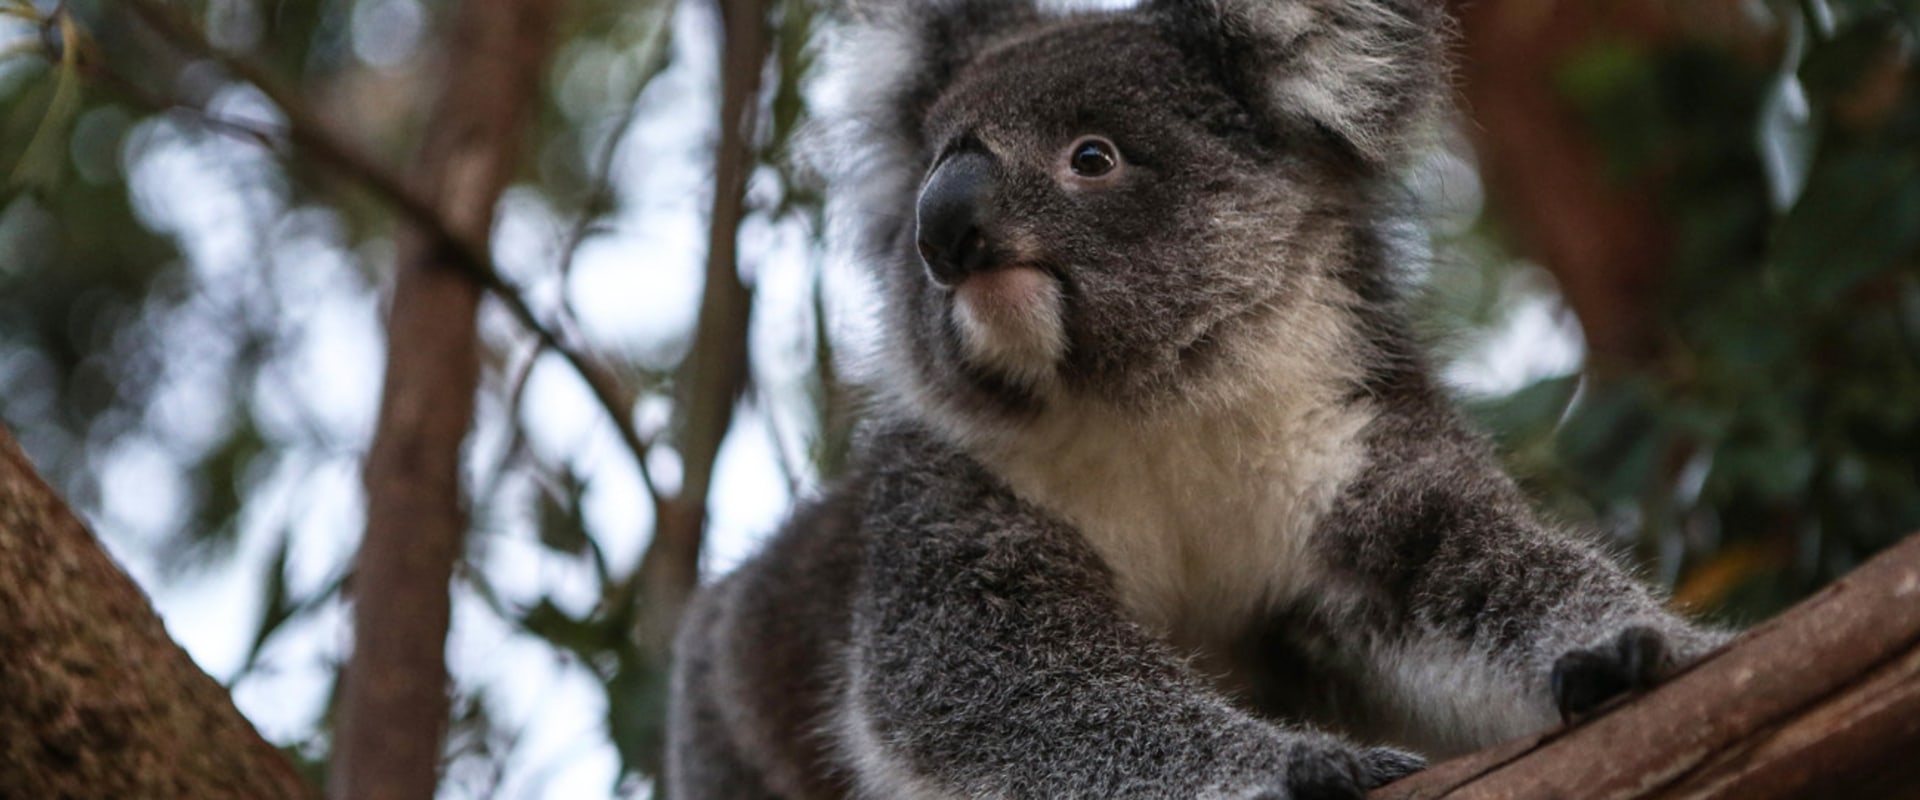 Koalas: The Unique Australian Wildlife You Need to Know About